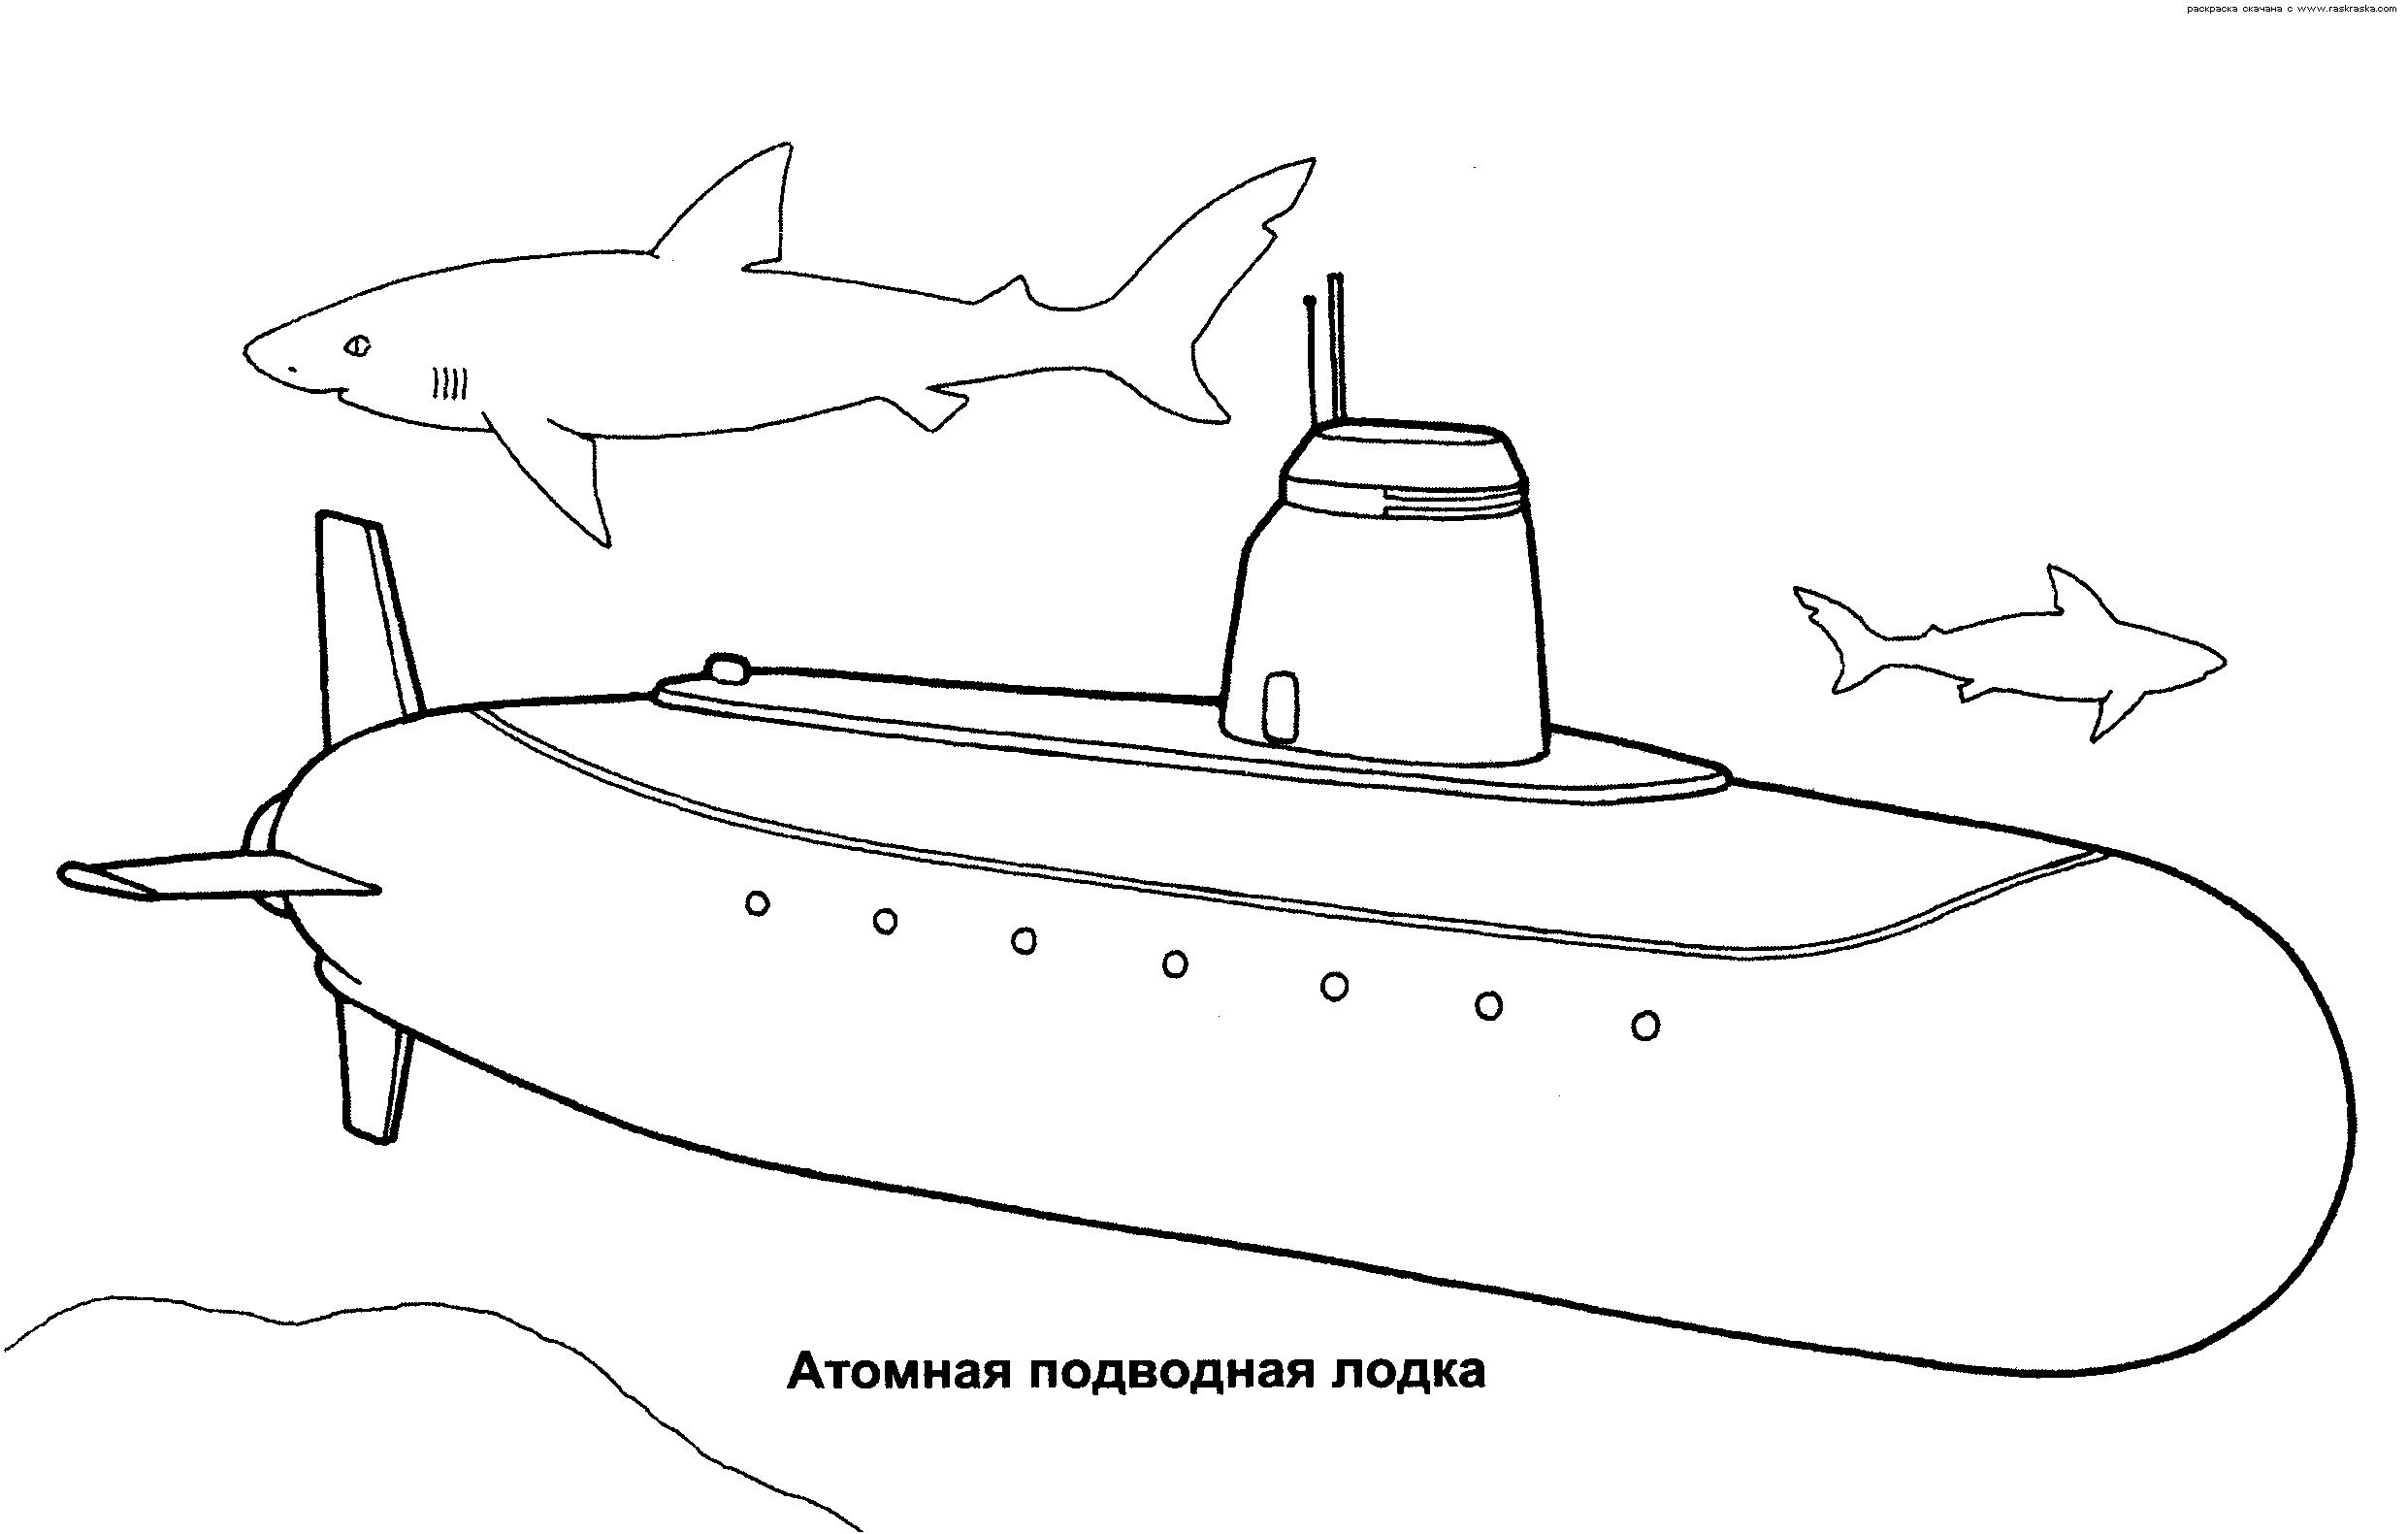 Розмальовки природа Дитяча розфарбування, подводниймір, атомний підводний човен